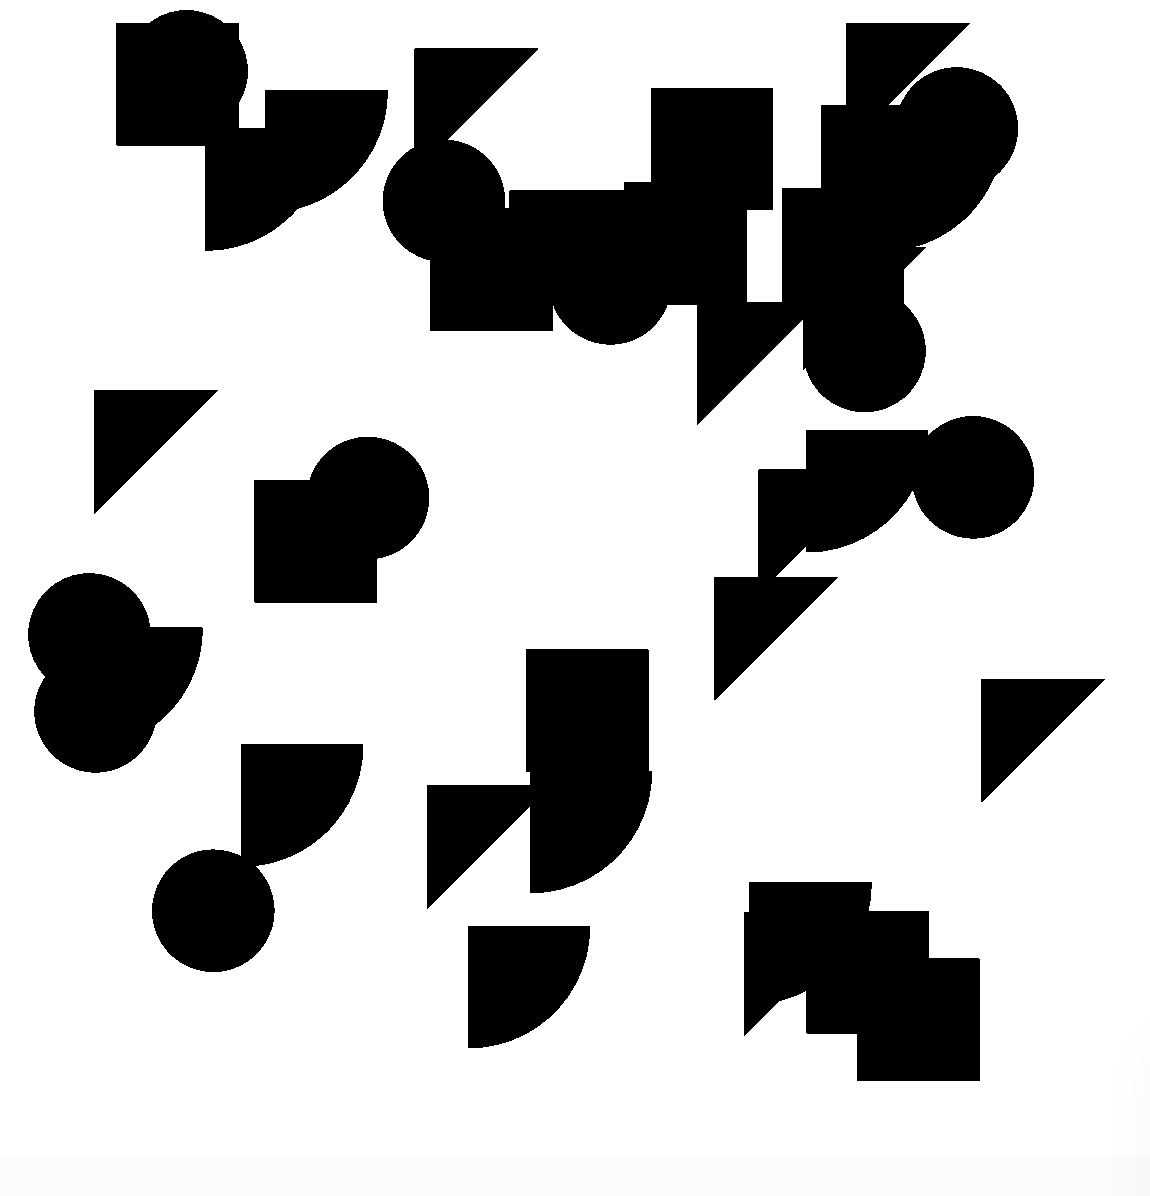 Beispielbild Generative Animation mit Kreisen, Quadraten, Dreiecken und Viertelkreisen